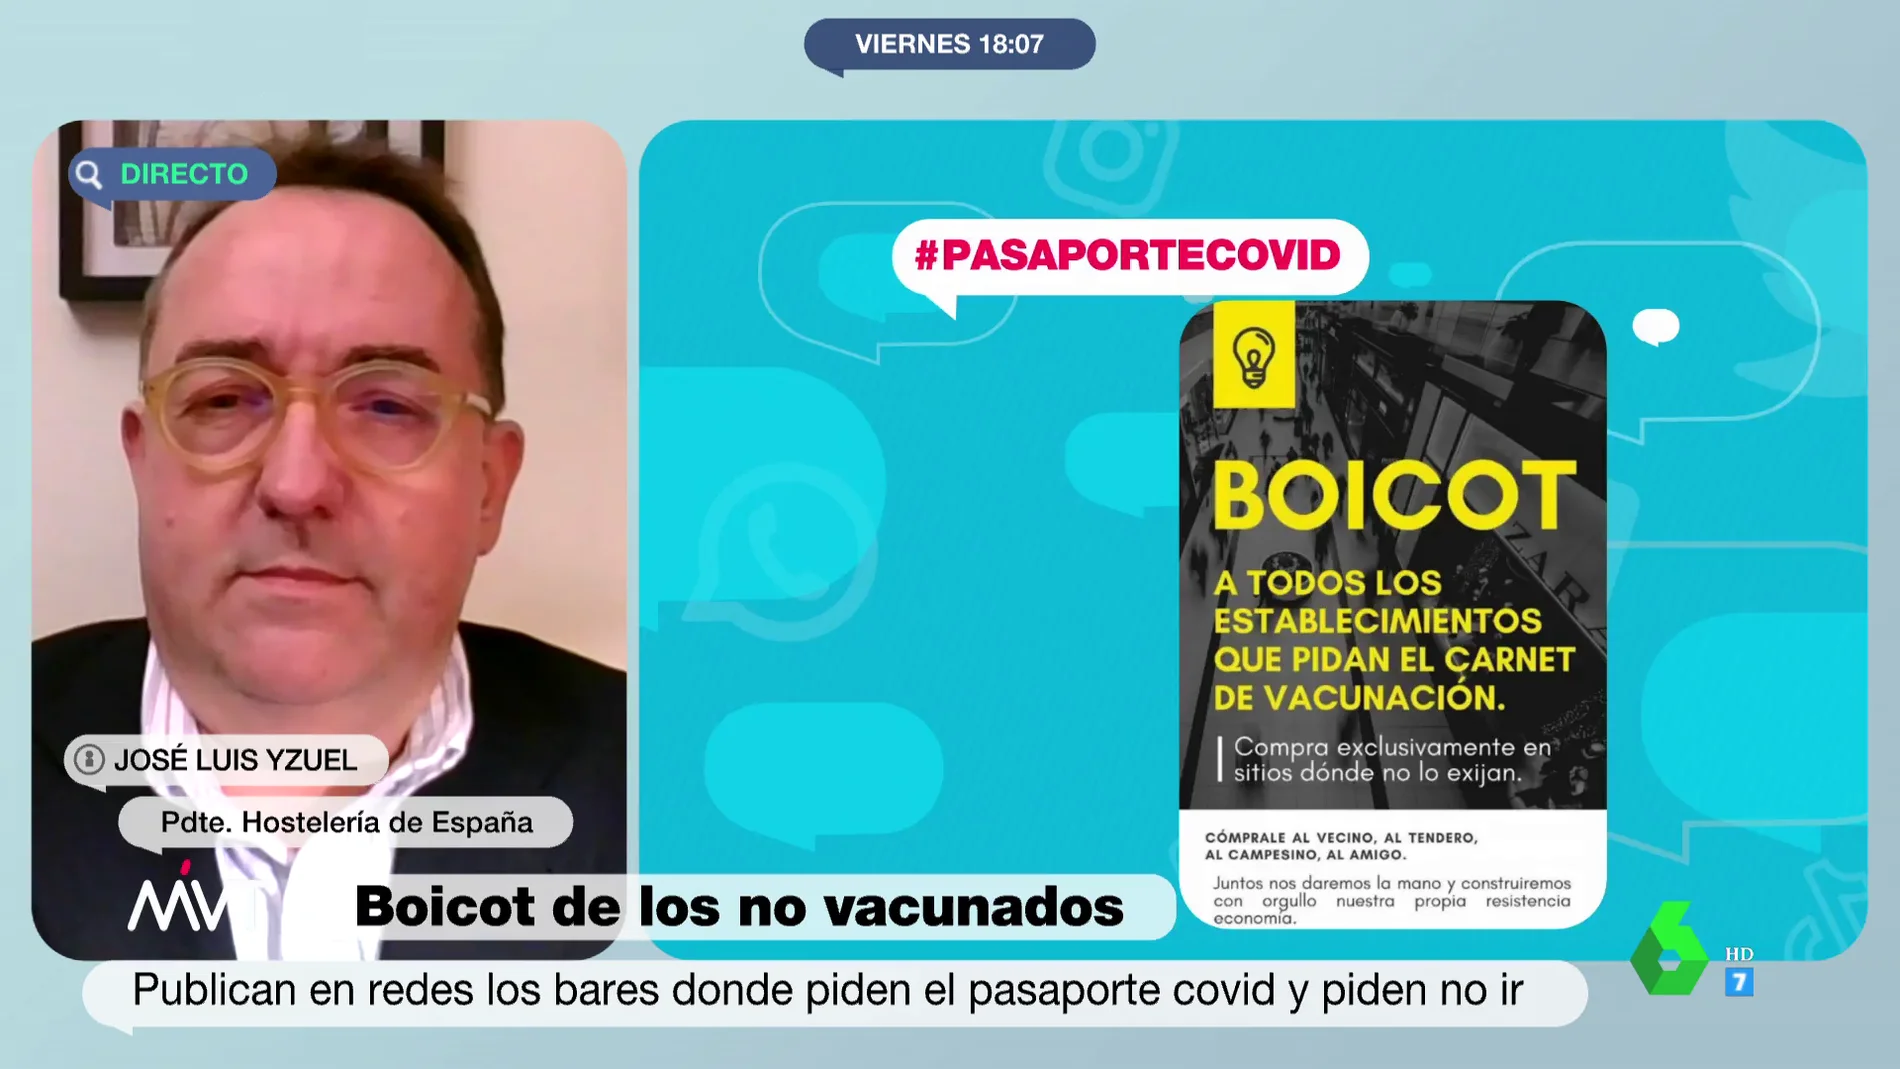 José Luis Yzuel (Hostelería de España) ve el pasaporte COVID "un mal menor": "Nos parece lamentable demonizar establecimientos"